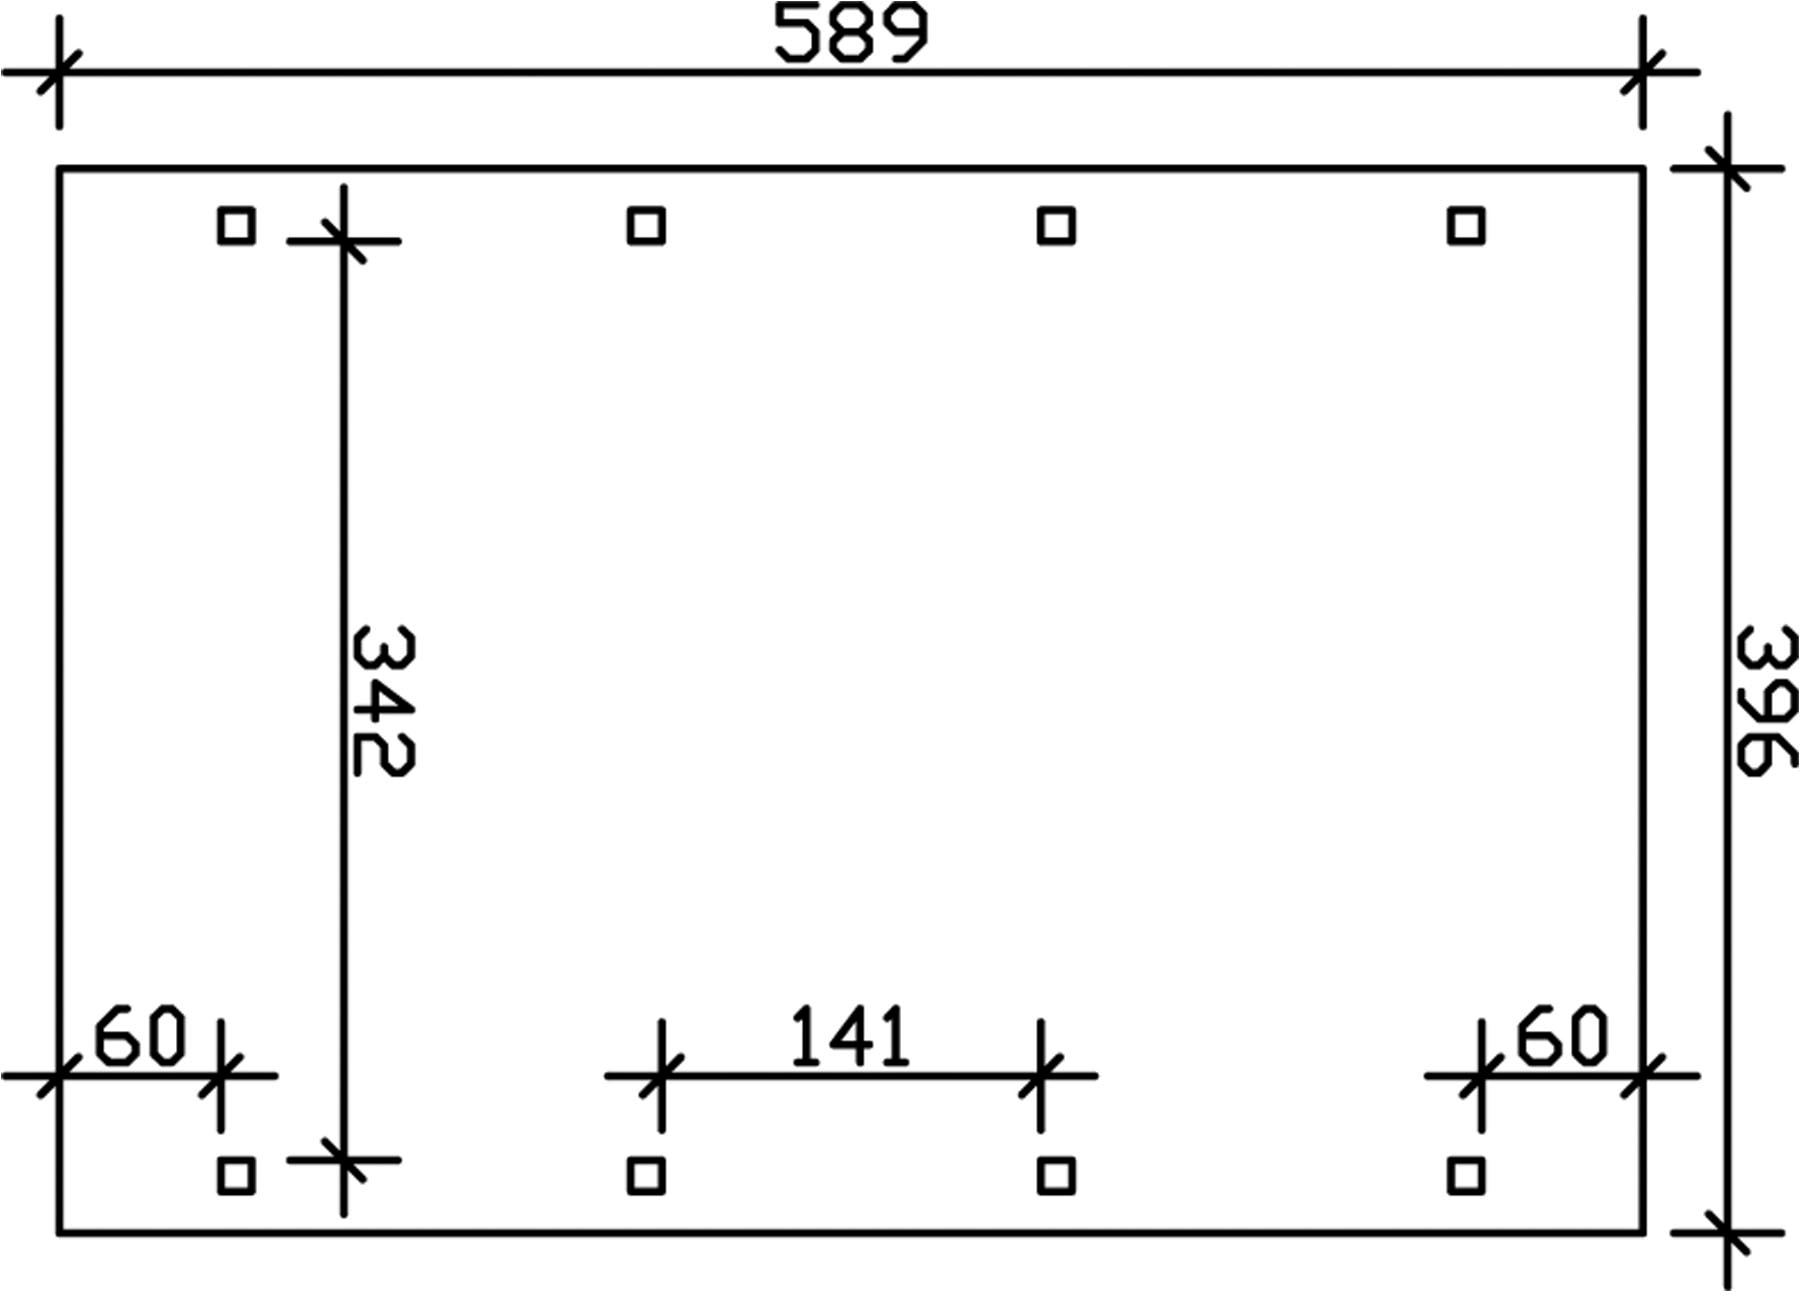 Skanholz Einzelcarport »Spreewald«, Nadelholz, 342 cm, Nussbaum, 396x589cm mit EPDM-Dach, rote Blende